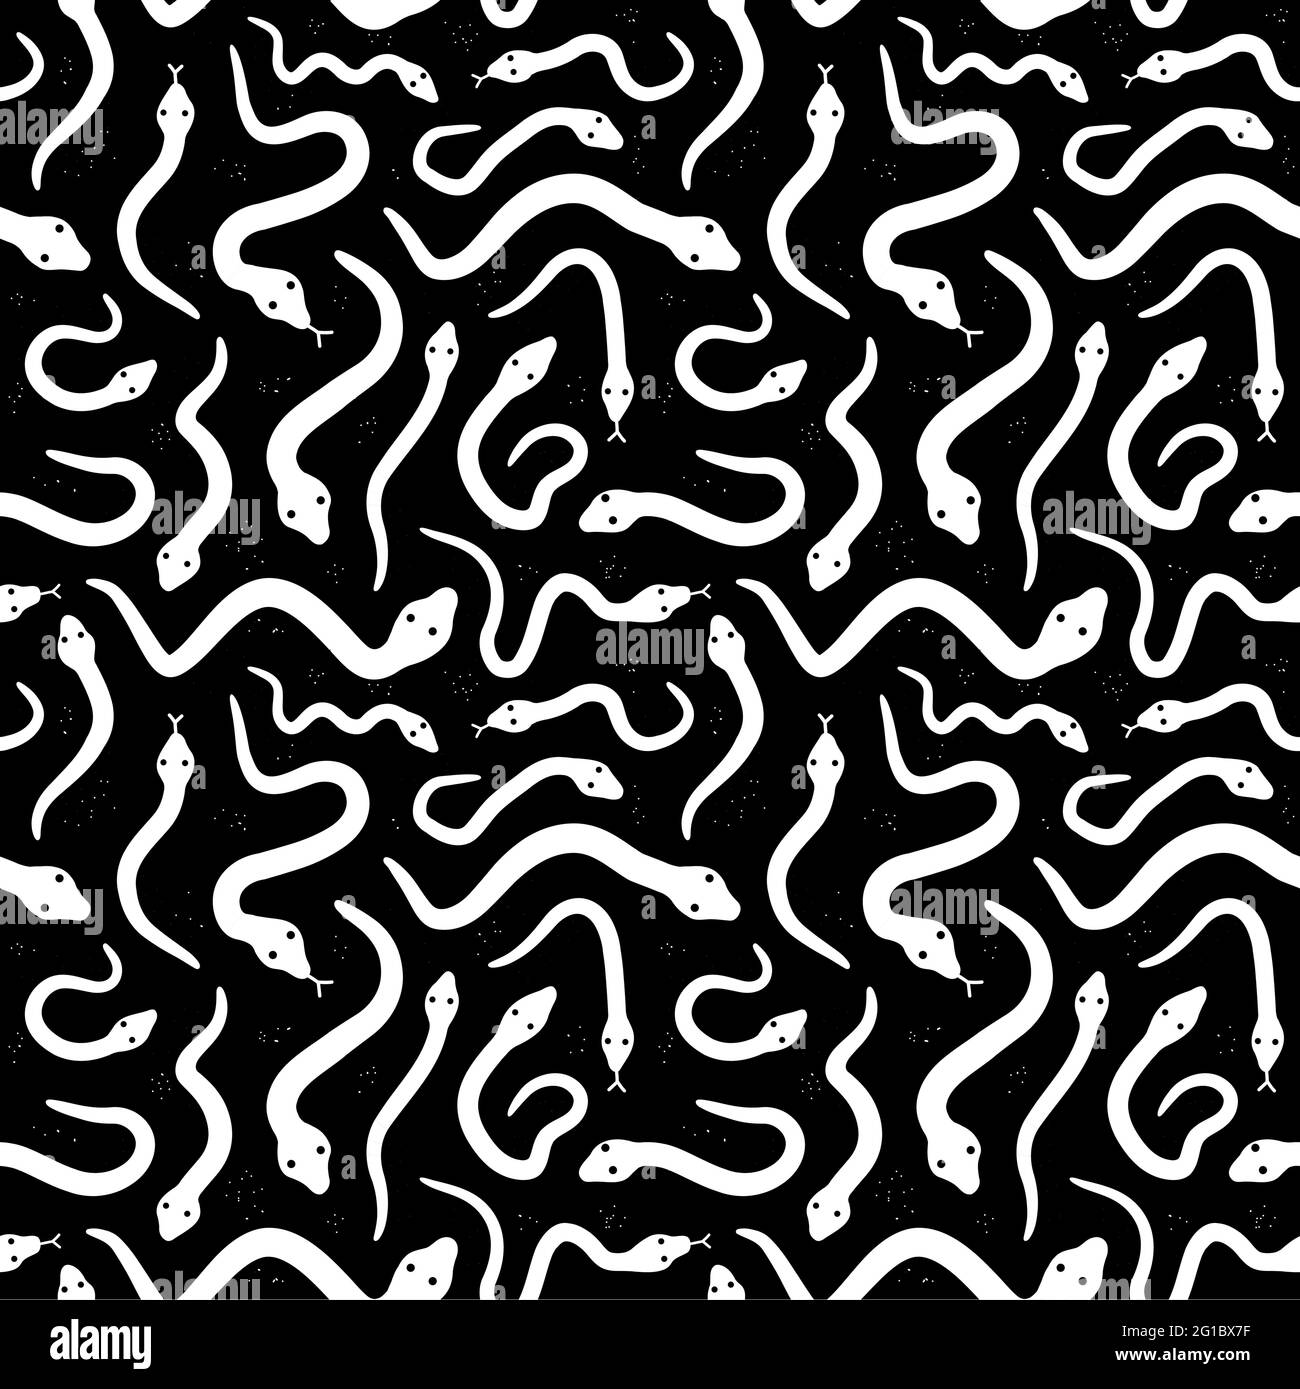 Weiße Schlangen auf schwarzem Hintergrund nahtloses Muster. Vektorgrafik handgezeichnetes Symbol im Grunge-Stil. Verschiedene monochrome Schlangen nahtloses Muster Stock Vektor